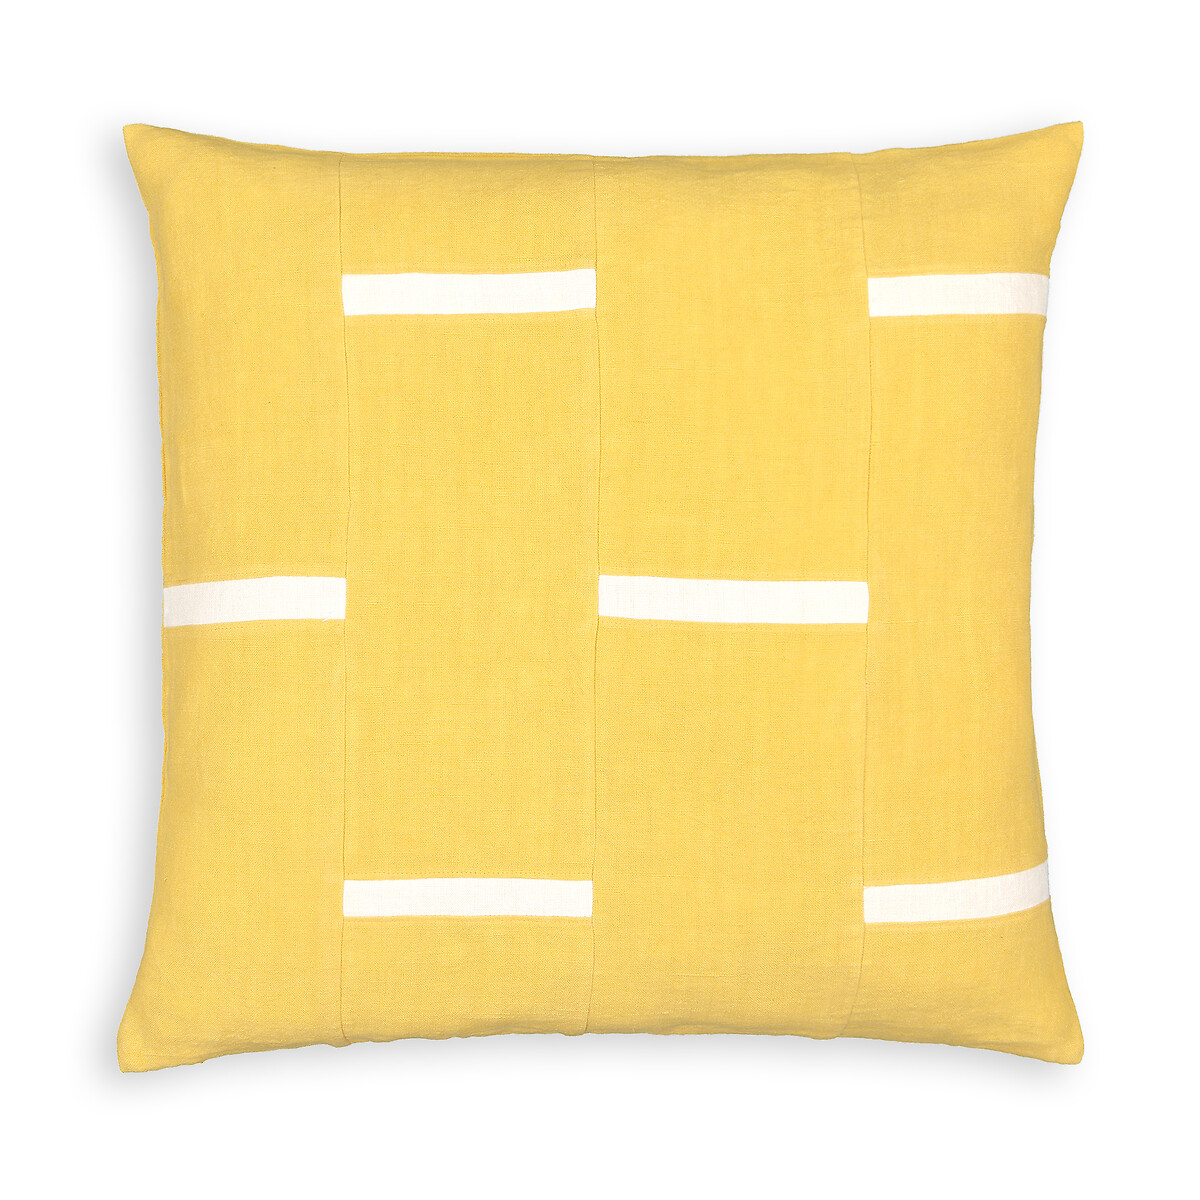 Чехол На подушку из льна Breaky 50 x 50 см желтый